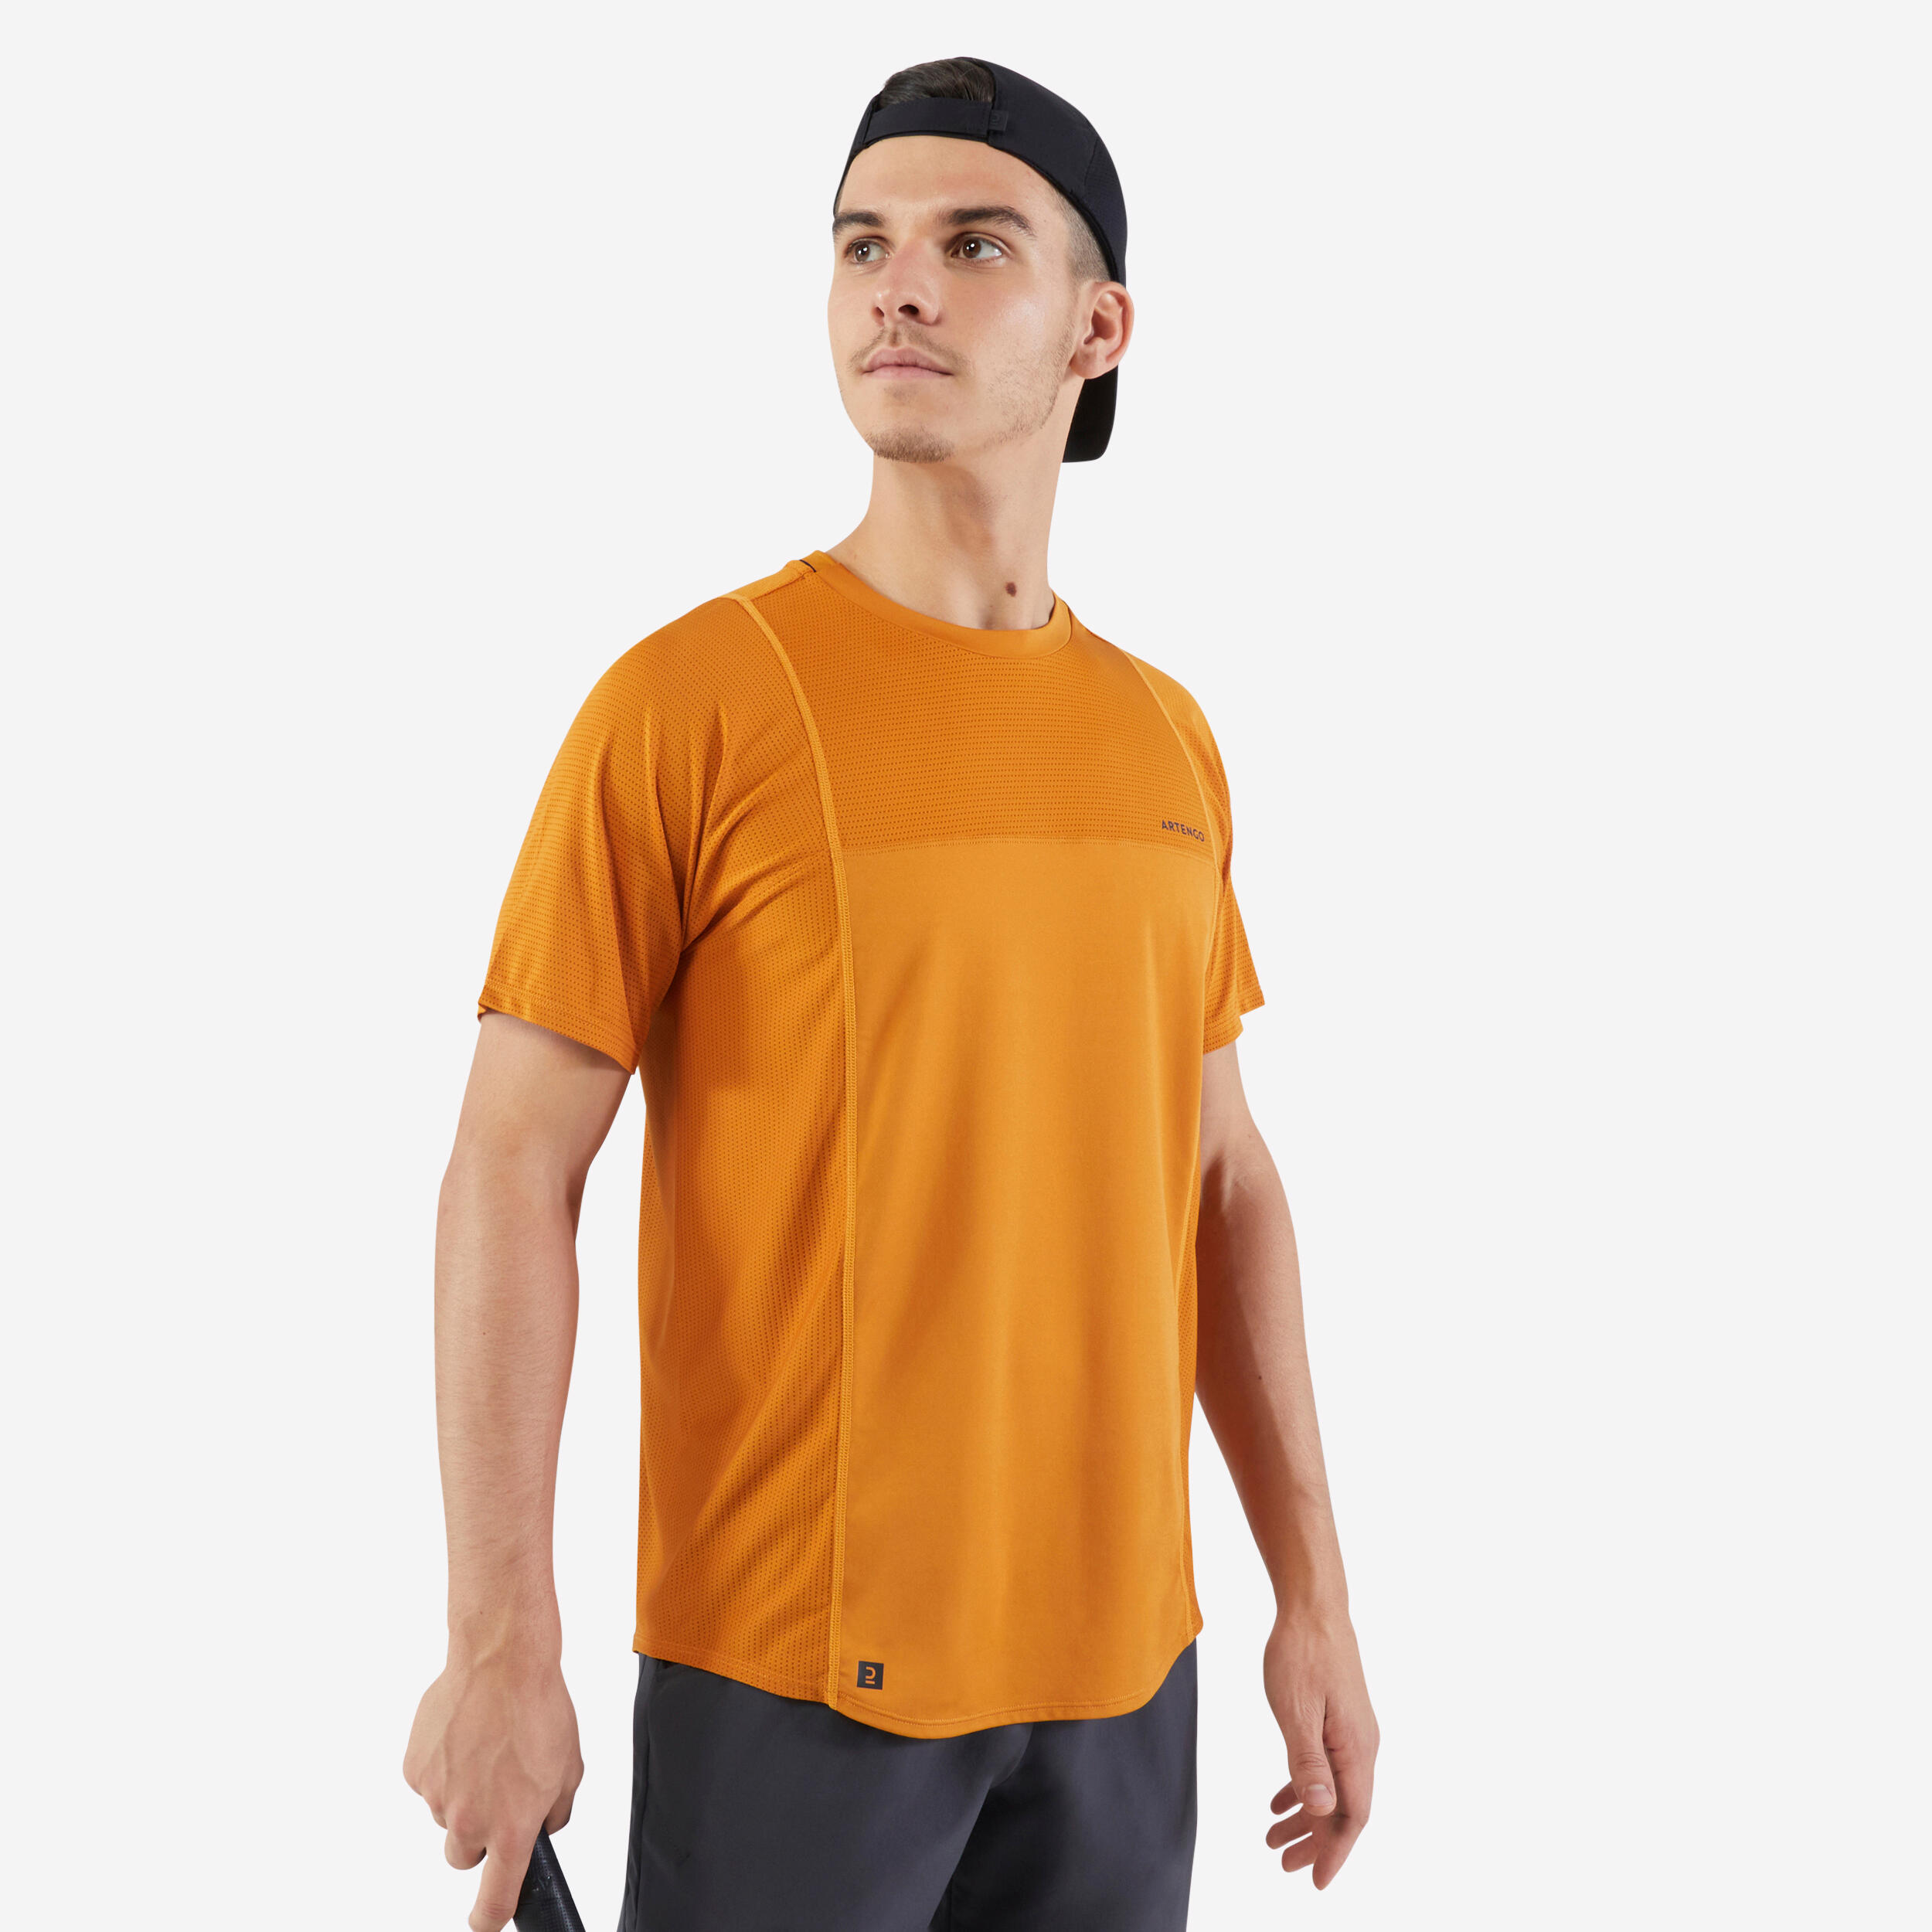 ARTENGO Men's Short-Sleeved Tennis T-Shirt Dry - Ochre Gaël Monfils